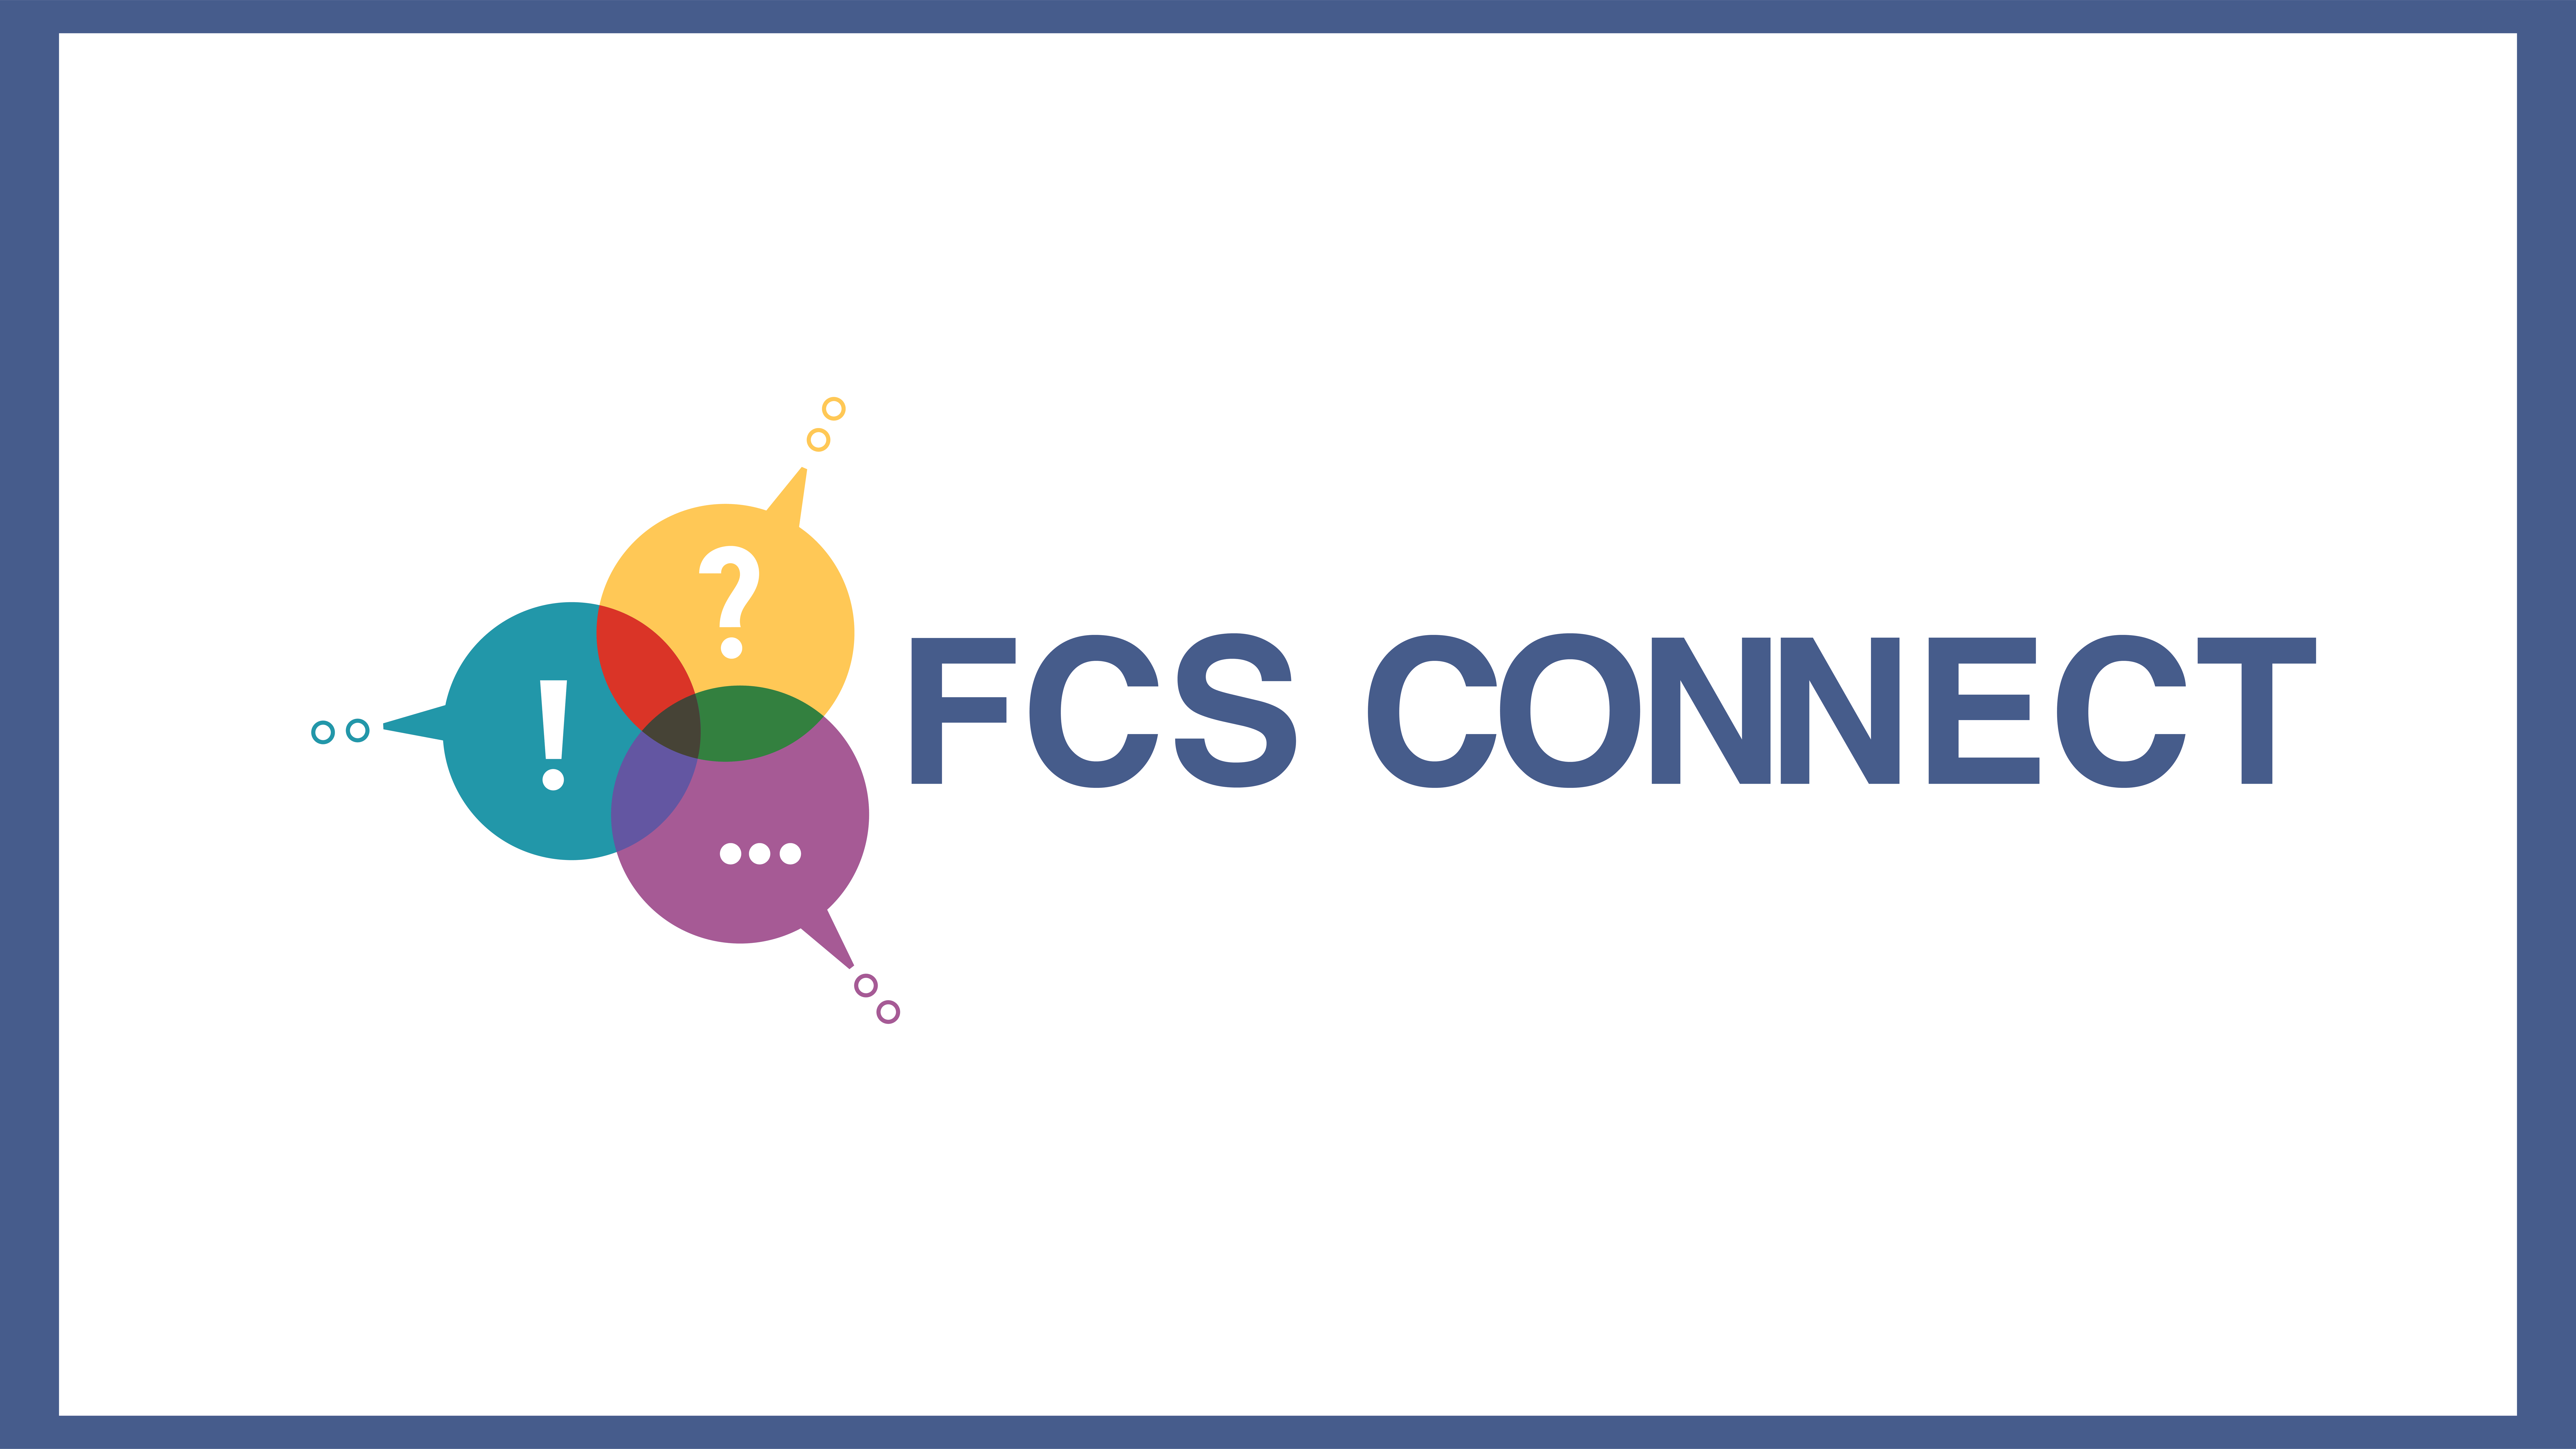 FCS CONNECT LOGO SLIDE